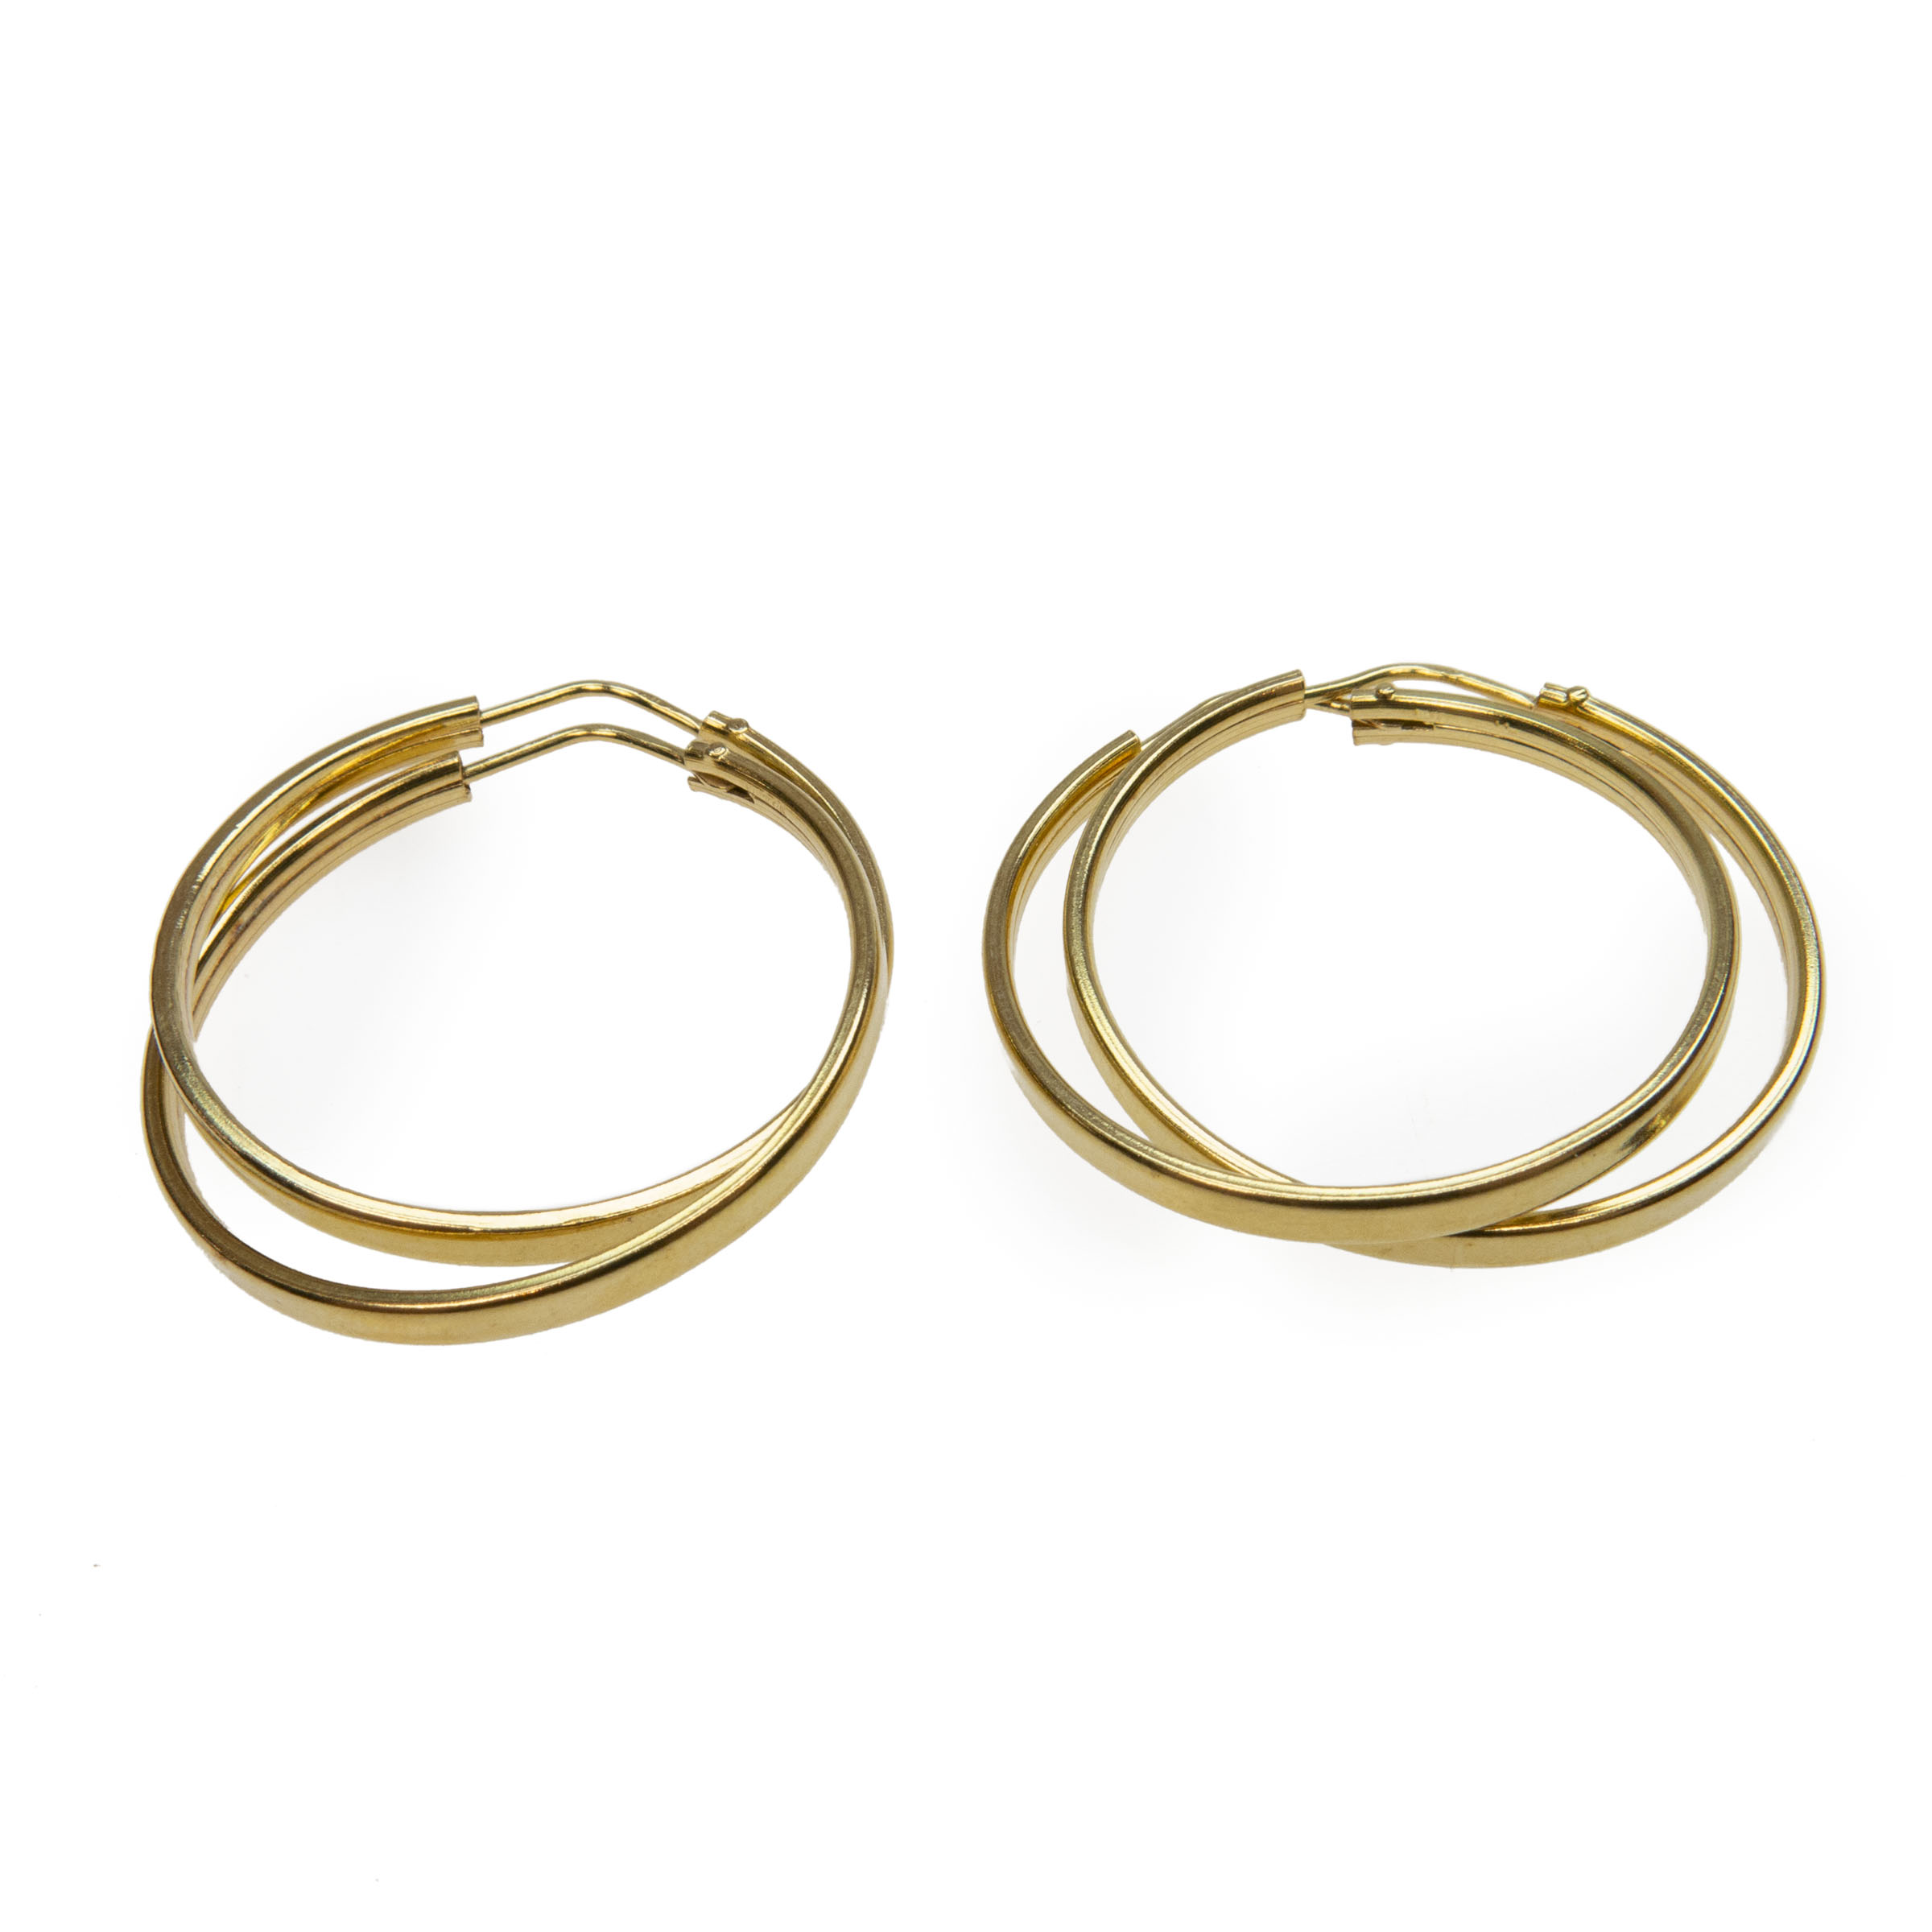 2 X Pairs Of 18K Yellow Gold Hoop Earrings